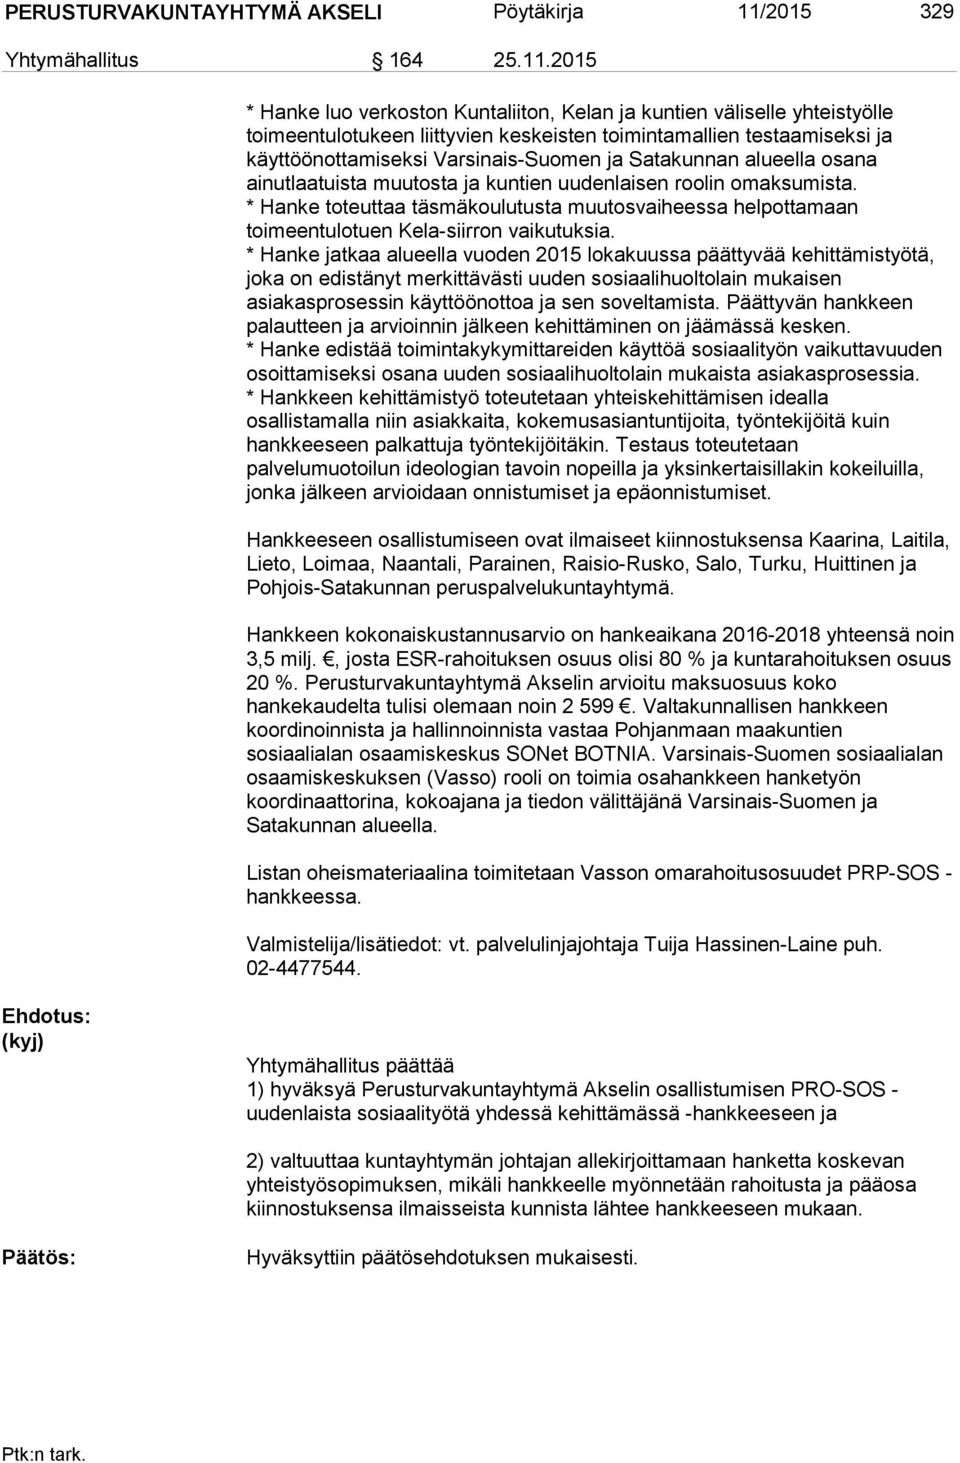 2015 * Hanke luo verkoston Kuntaliiton, Kelan ja kuntien väliselle yhteistyölle toimeentulotukeen liittyvien keskeisten toimintamallien testaamiseksi ja käyttöönottamiseksi Varsinais-Suomen ja